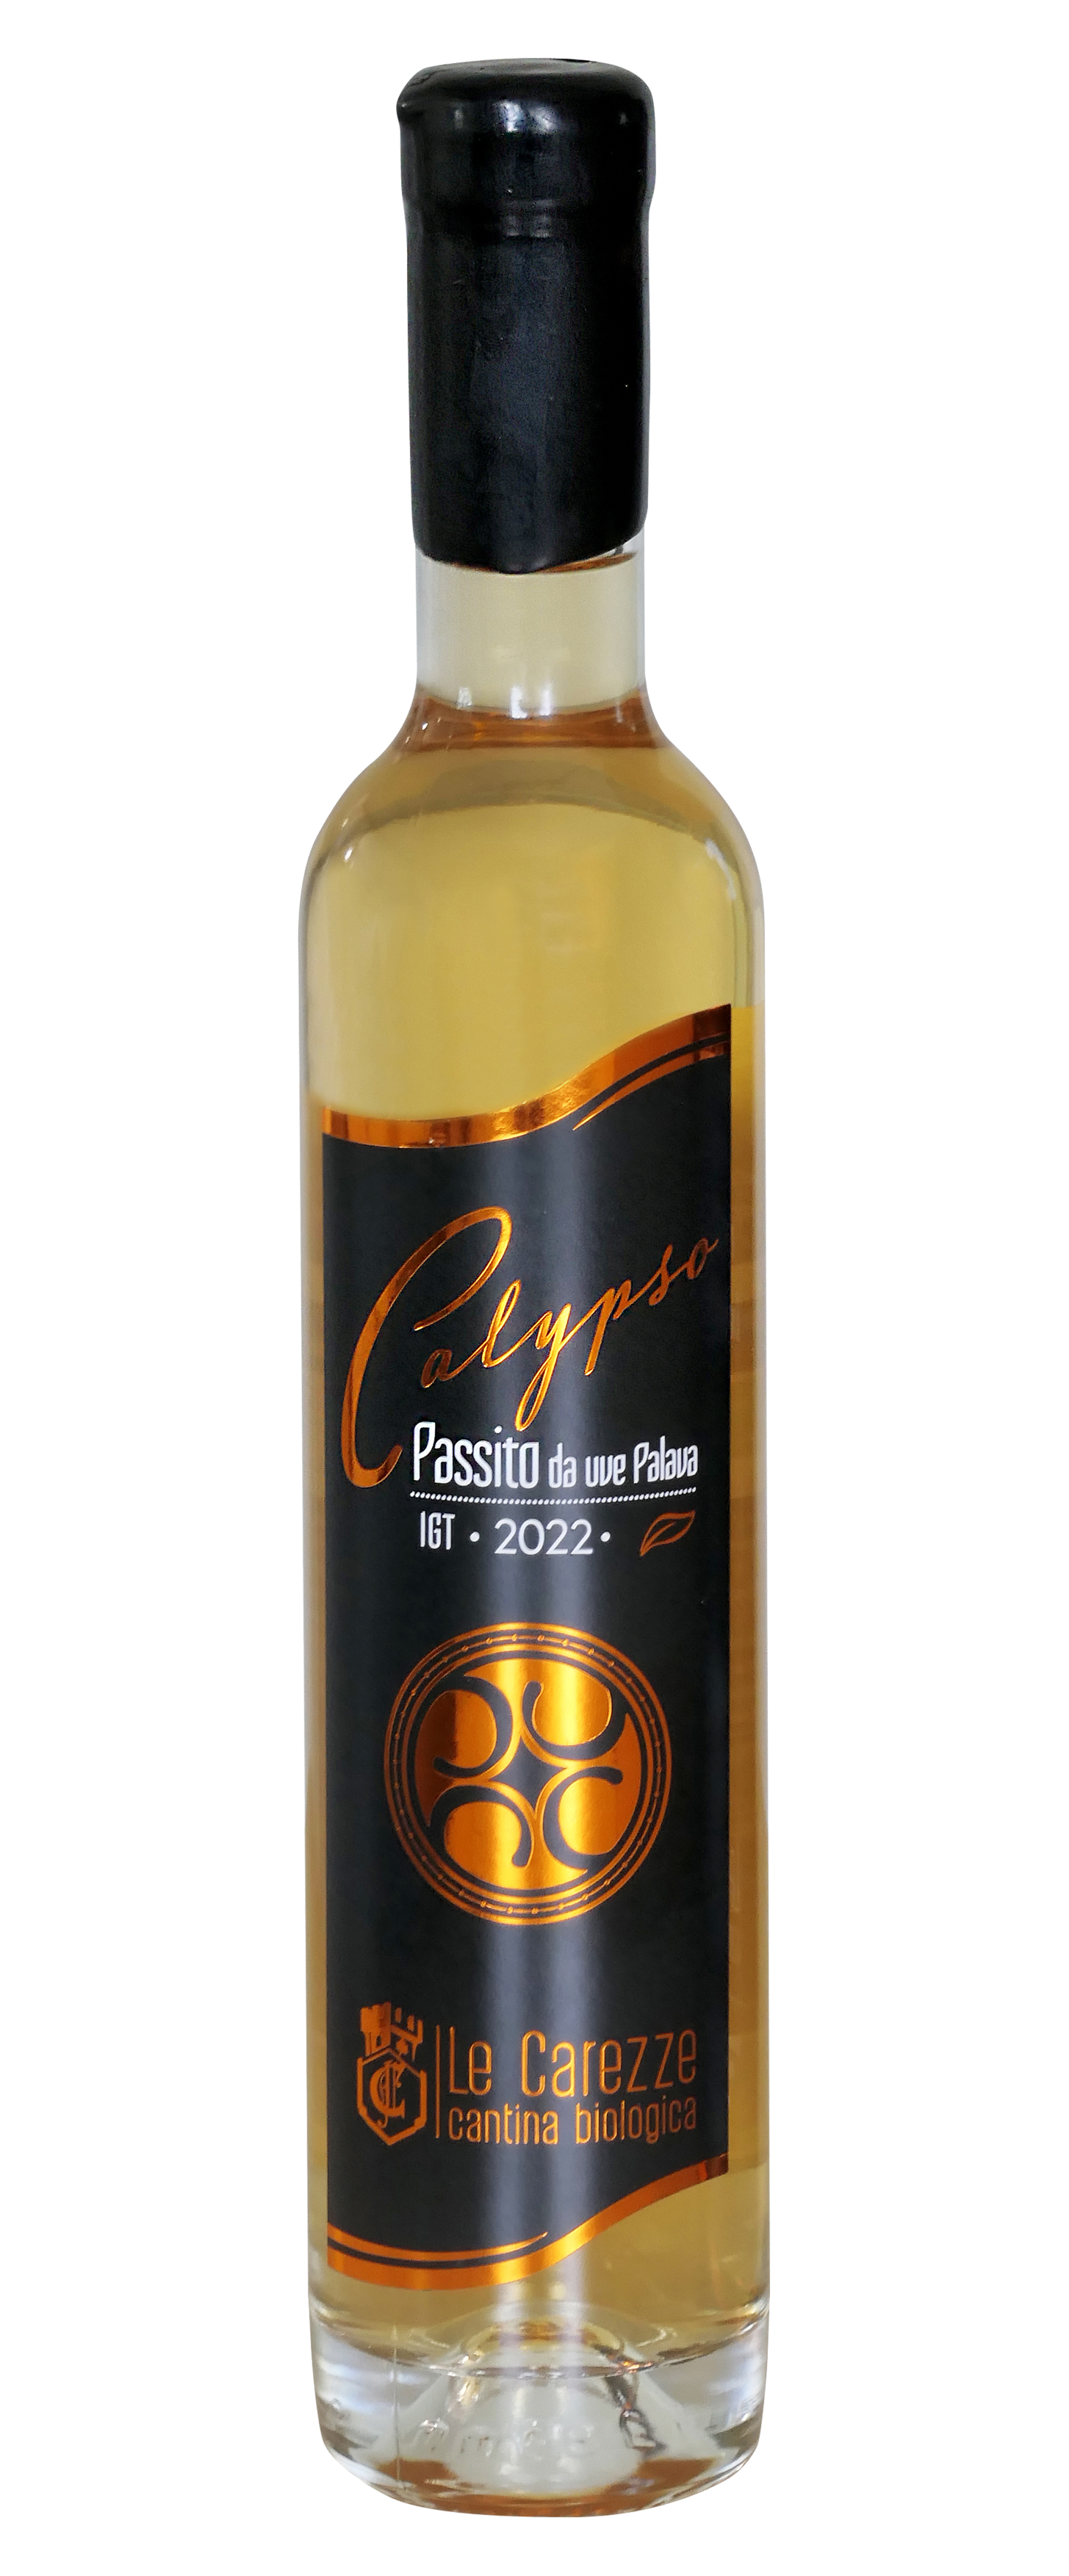 Bottiglia di vino passito Calypso 2021